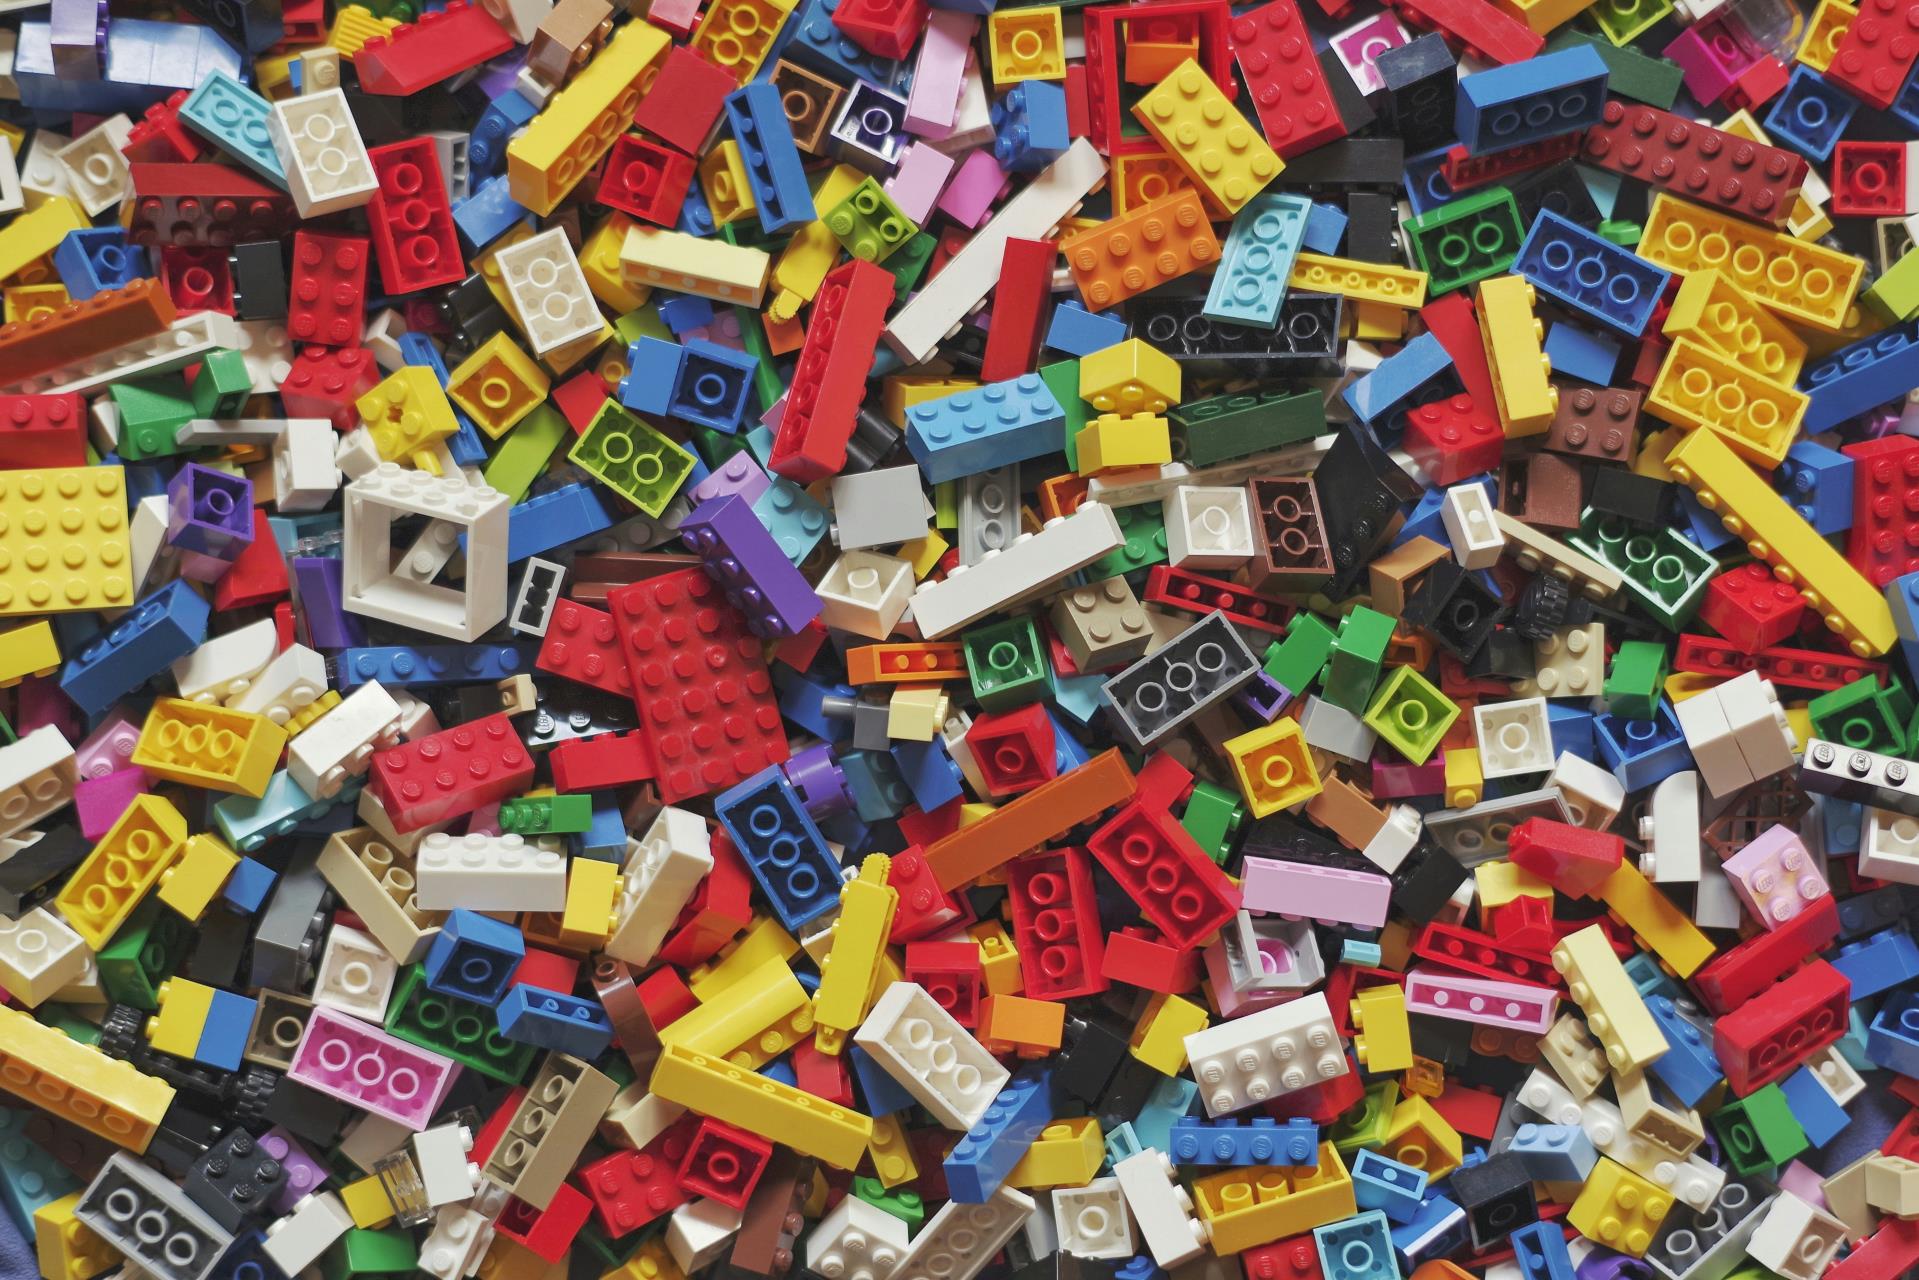 LEGO Let's Build Together!